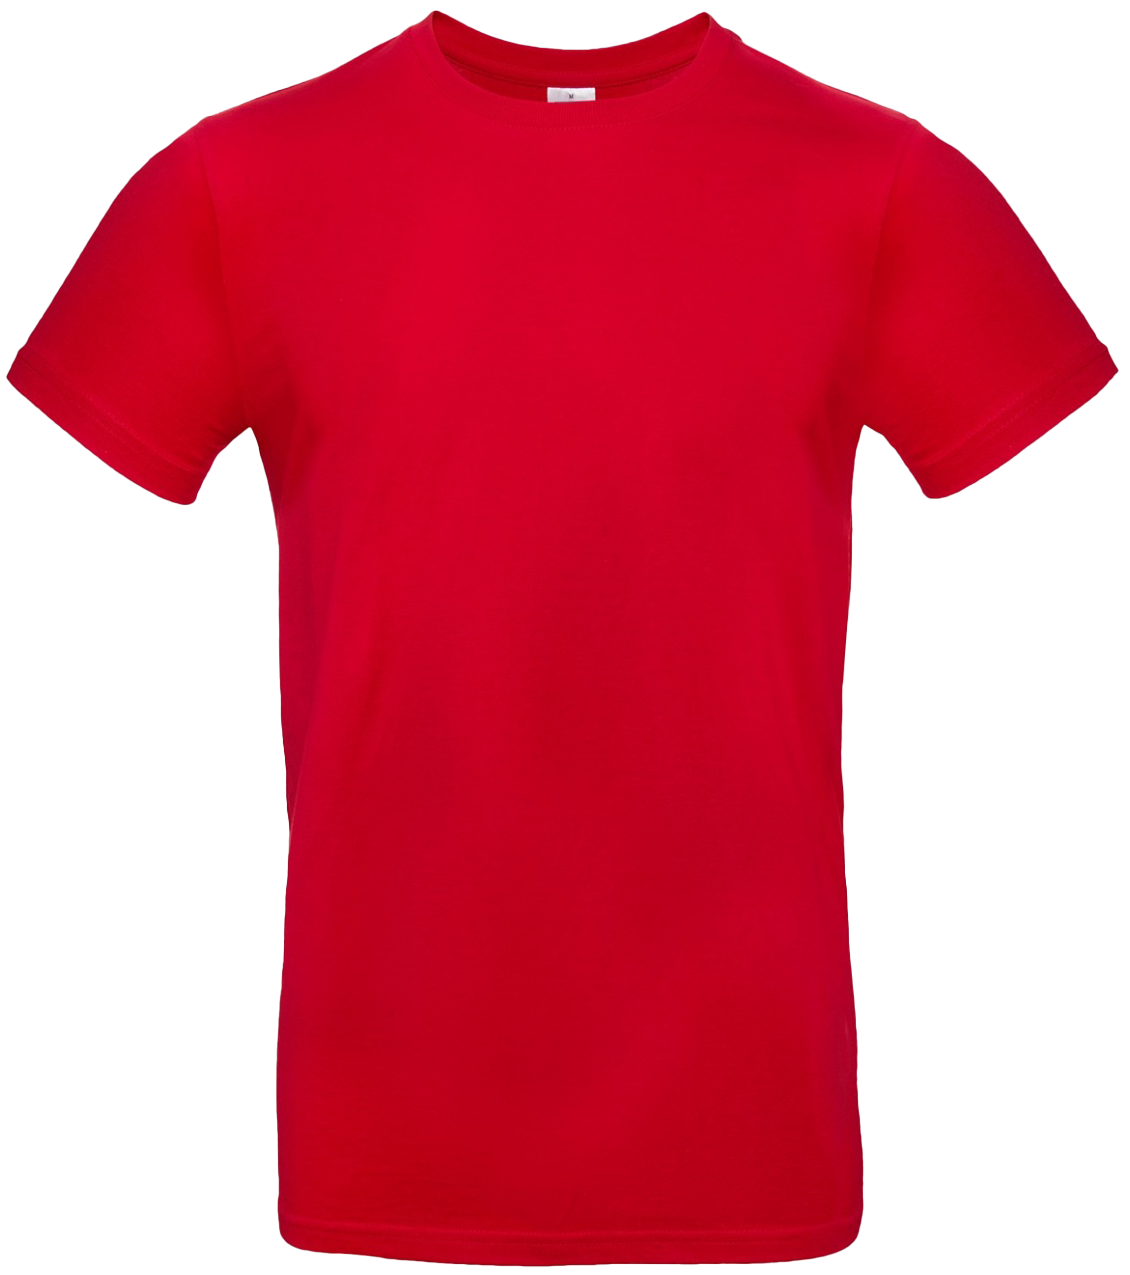 T-shirt E#190 Röd 50